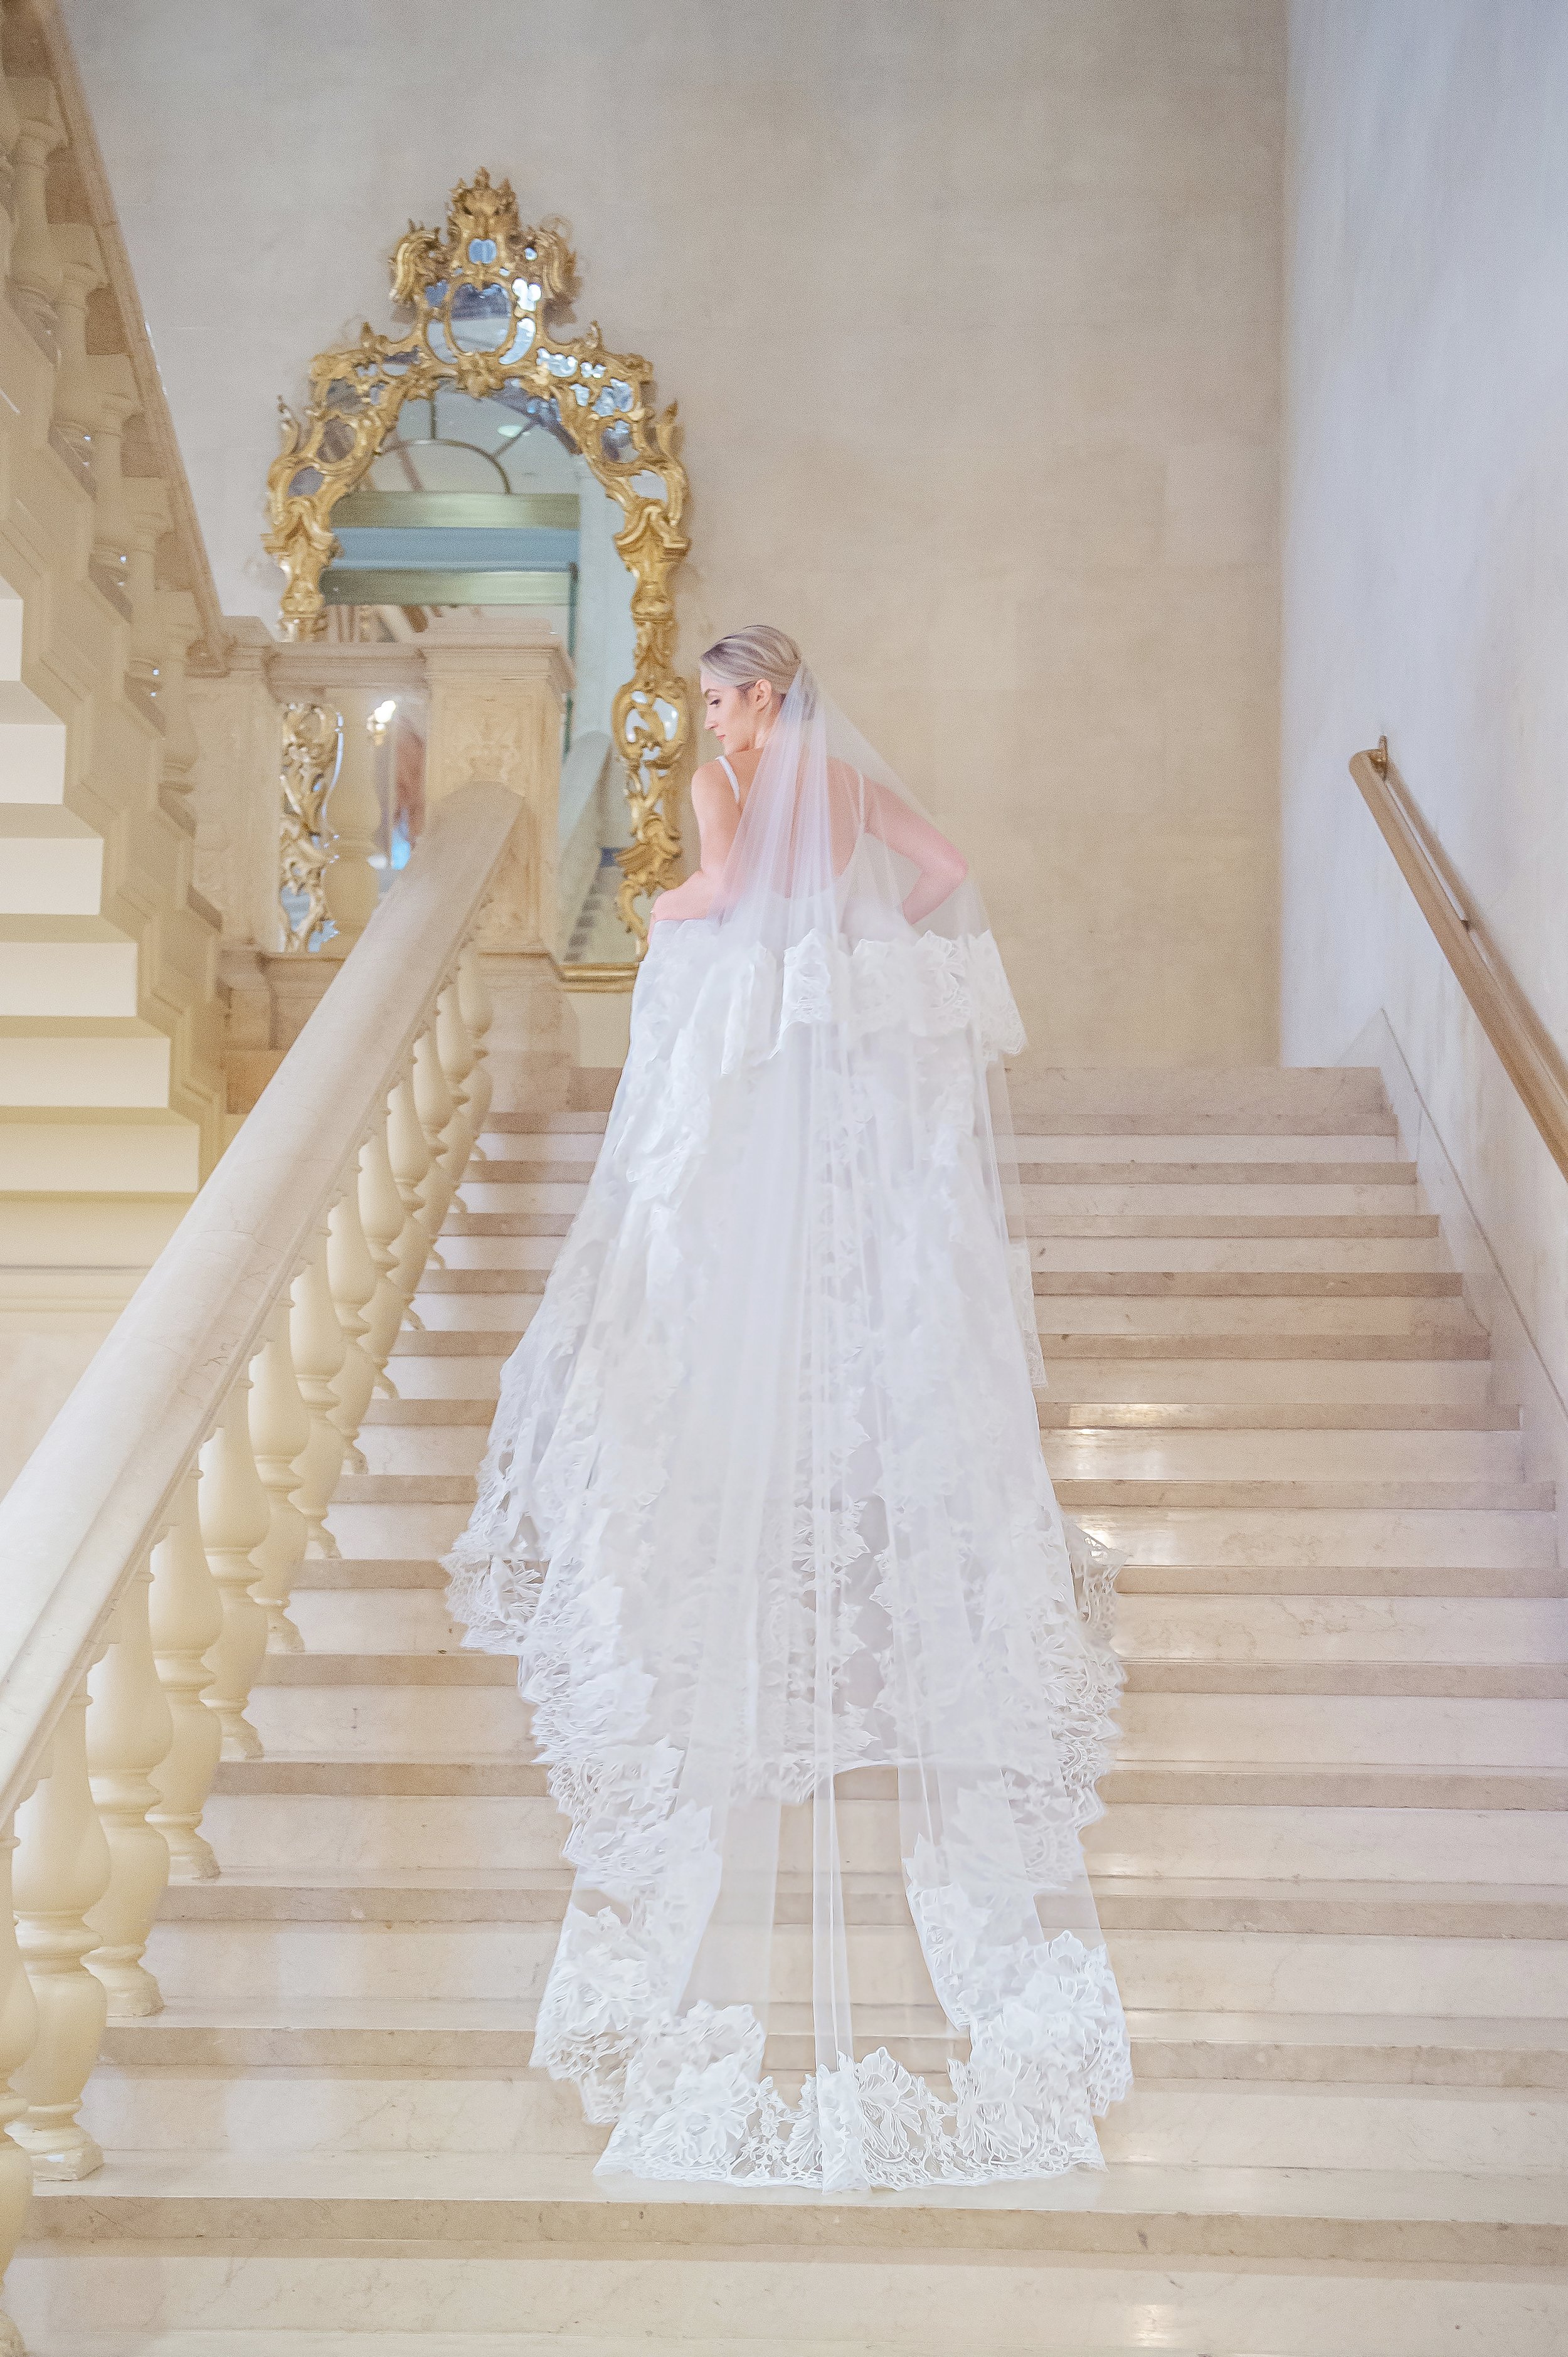 A wedding dress by Bergdorf Goodman